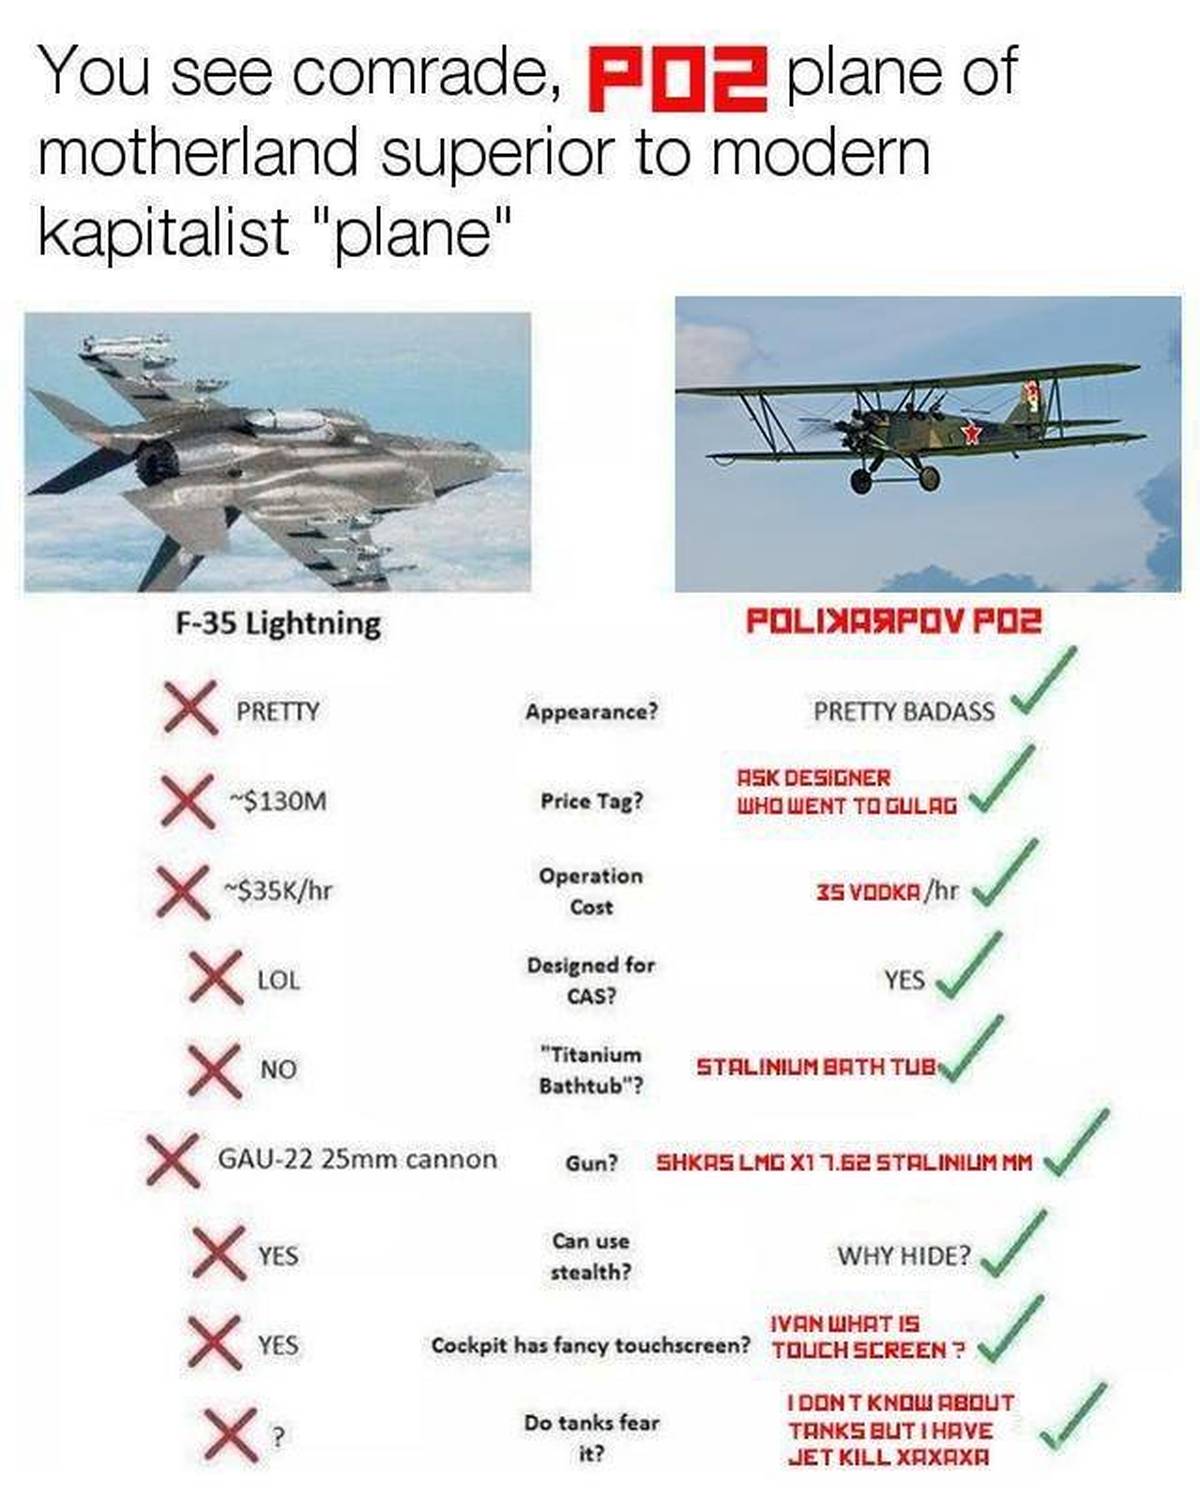 Polikarpov Po-2 Vs. Modern Kapitalist “Plane”